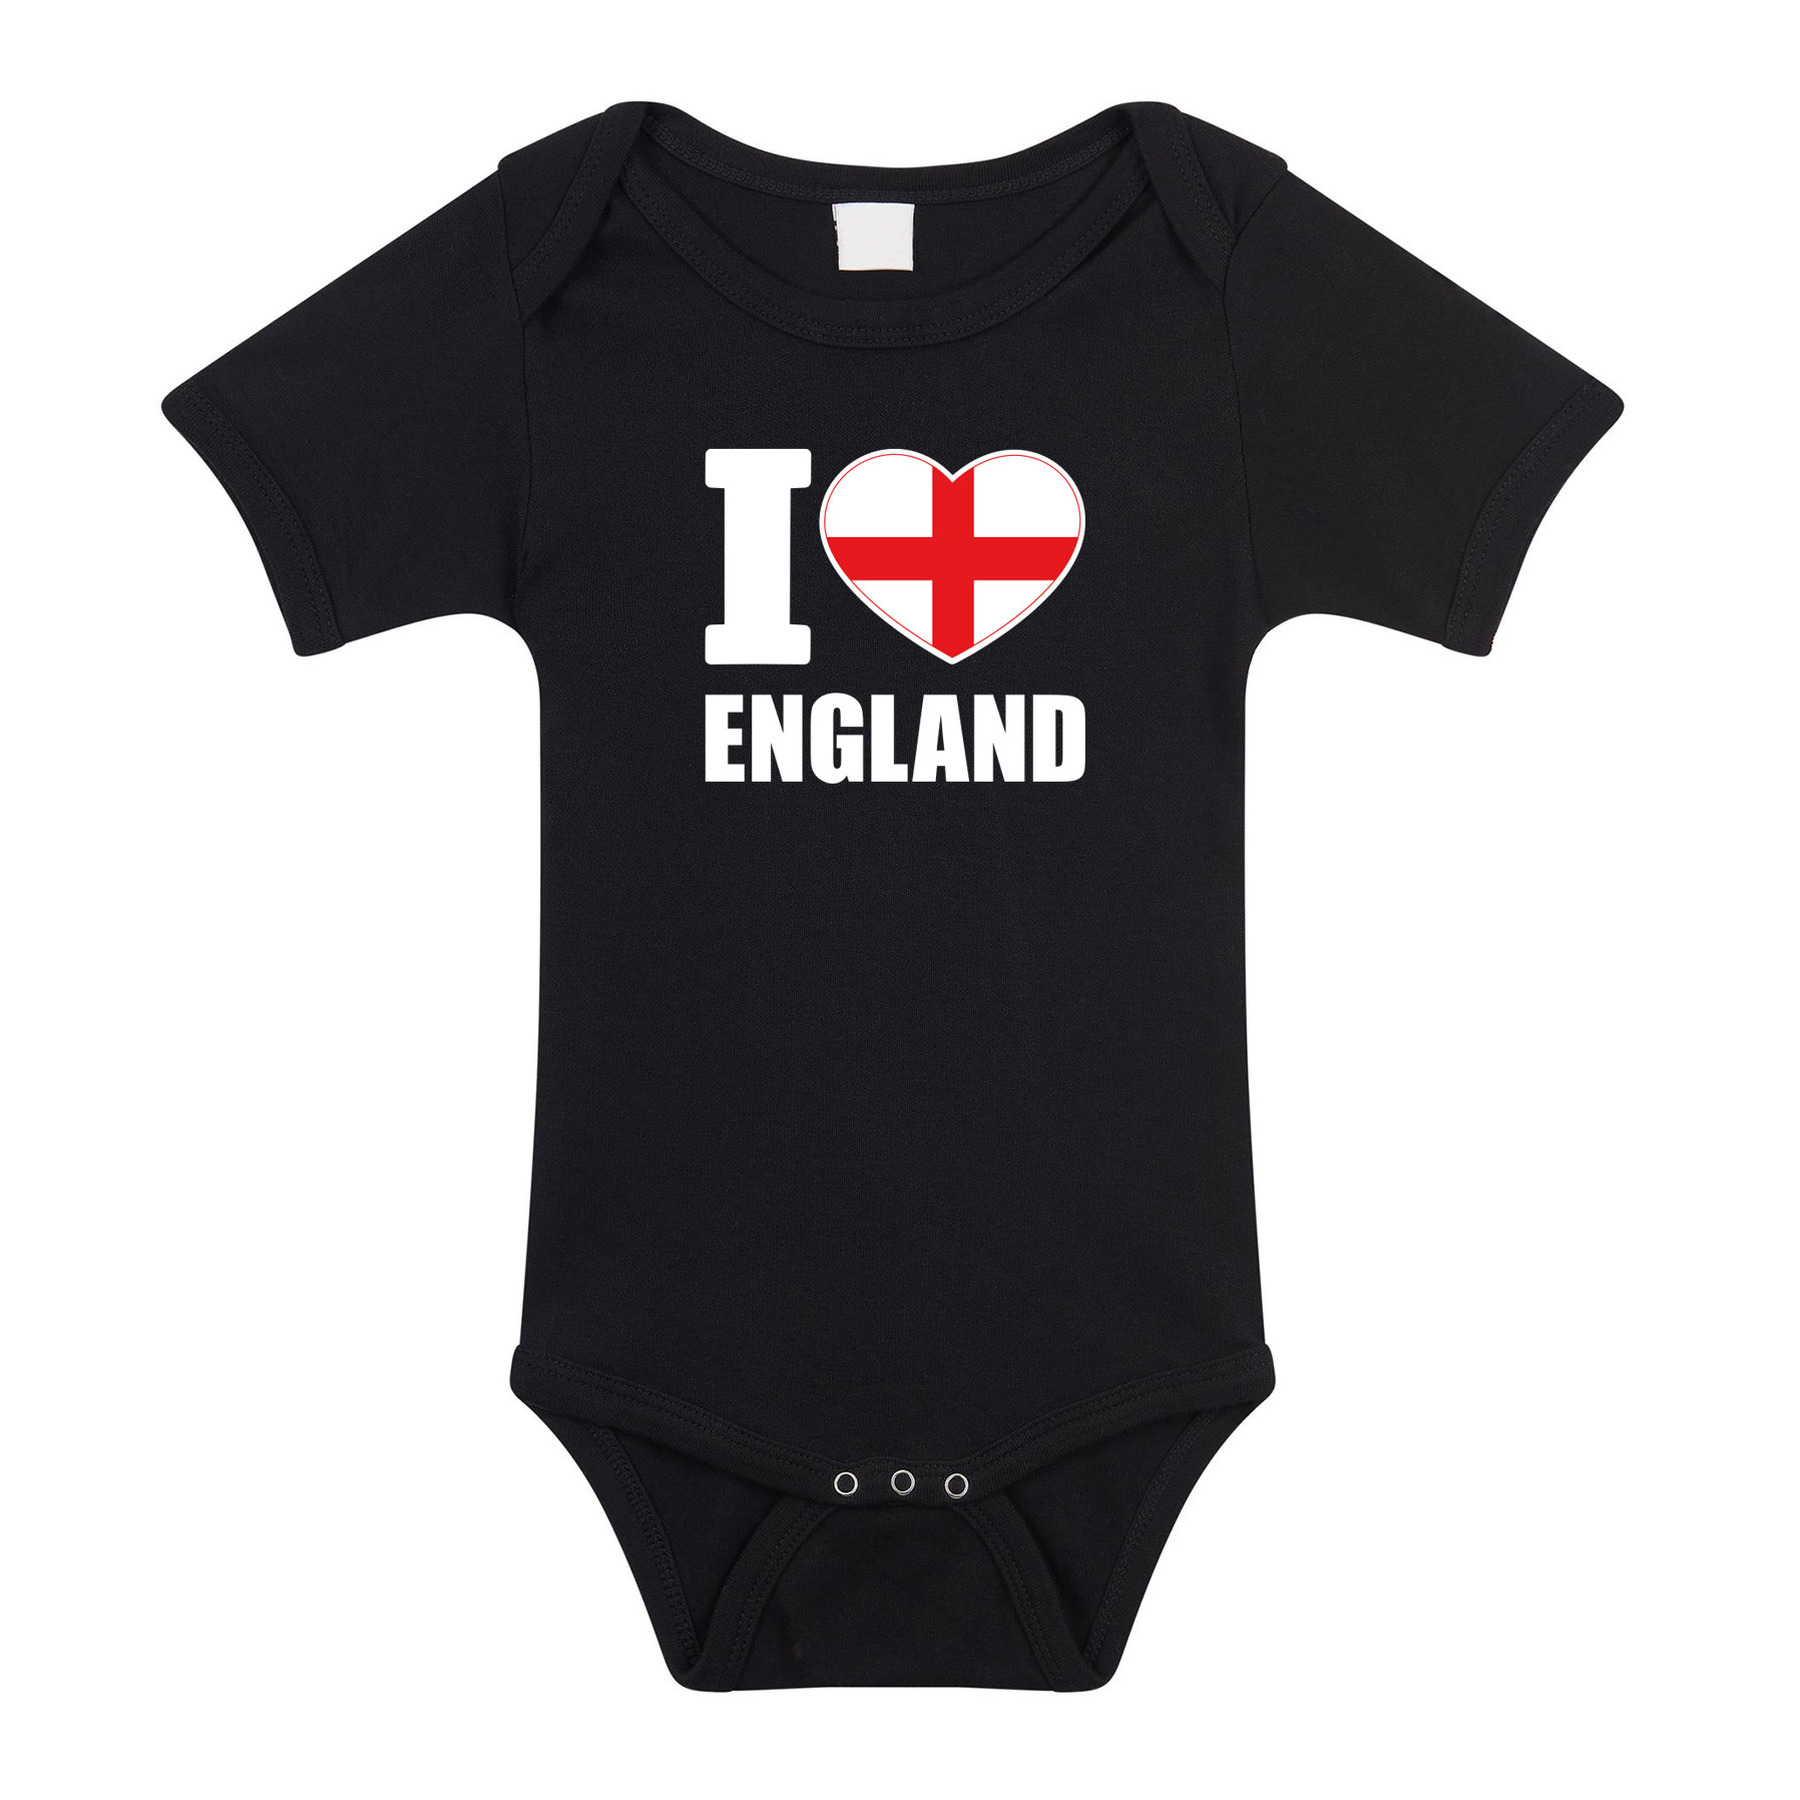 I love England baby rompertje zwart Engeland jongen/meisje